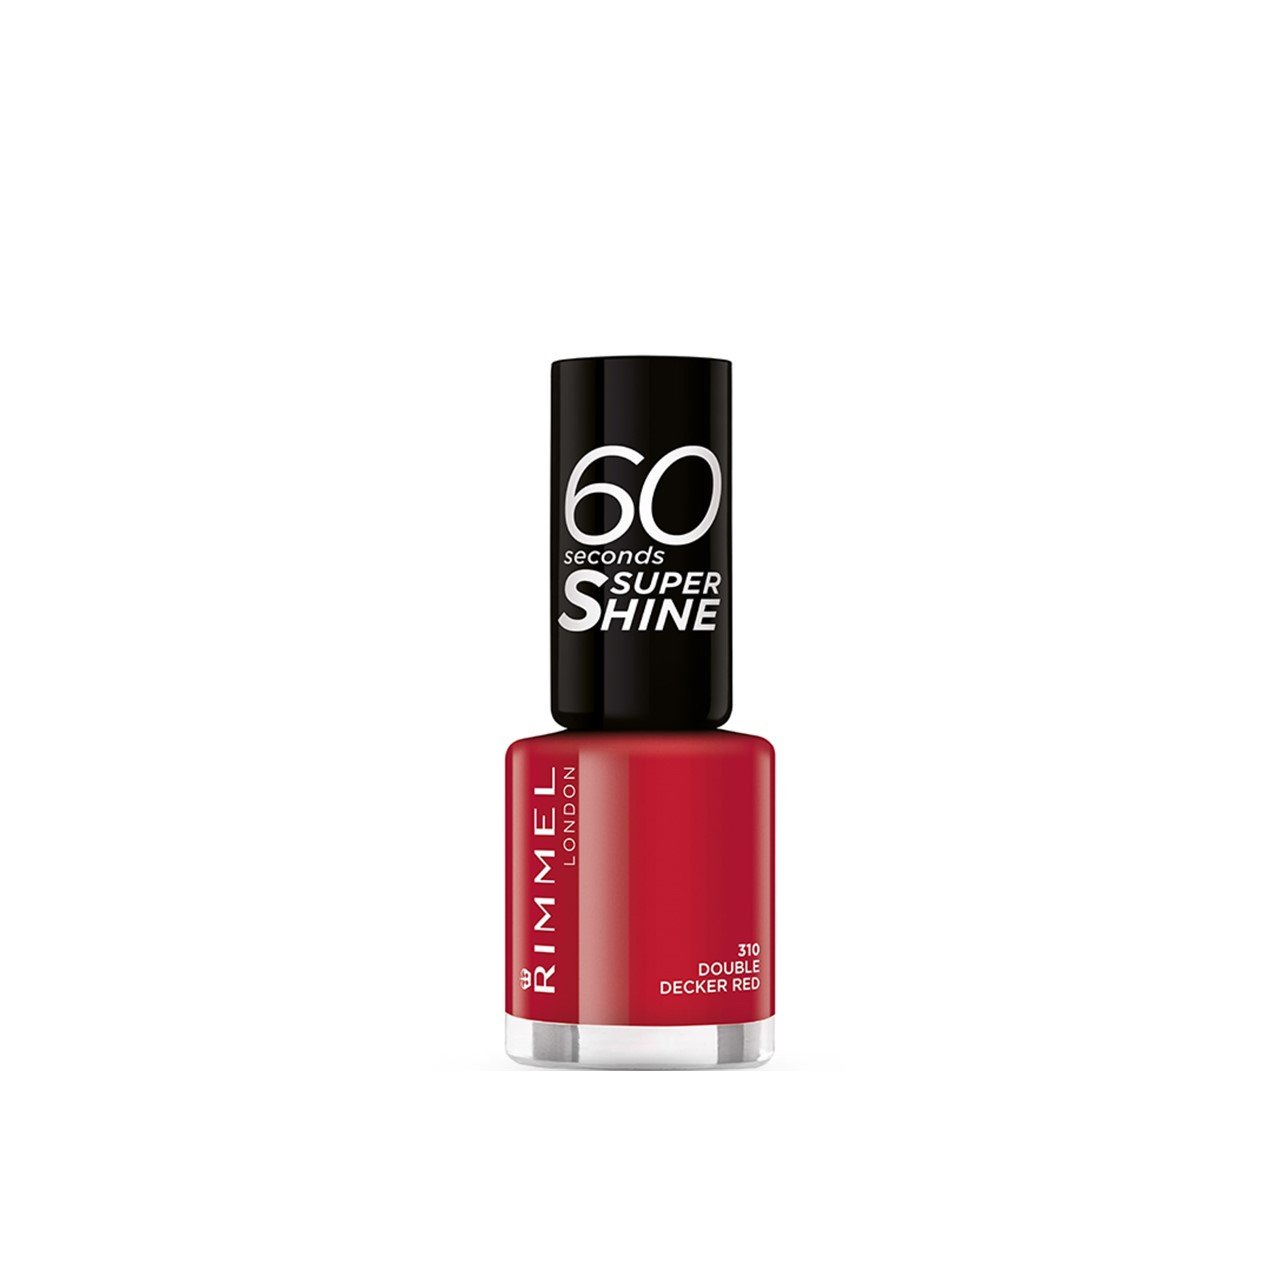 Buy Rimmel London 60 Seconds Super Shine Nail Polish 310 8ml · South Korea